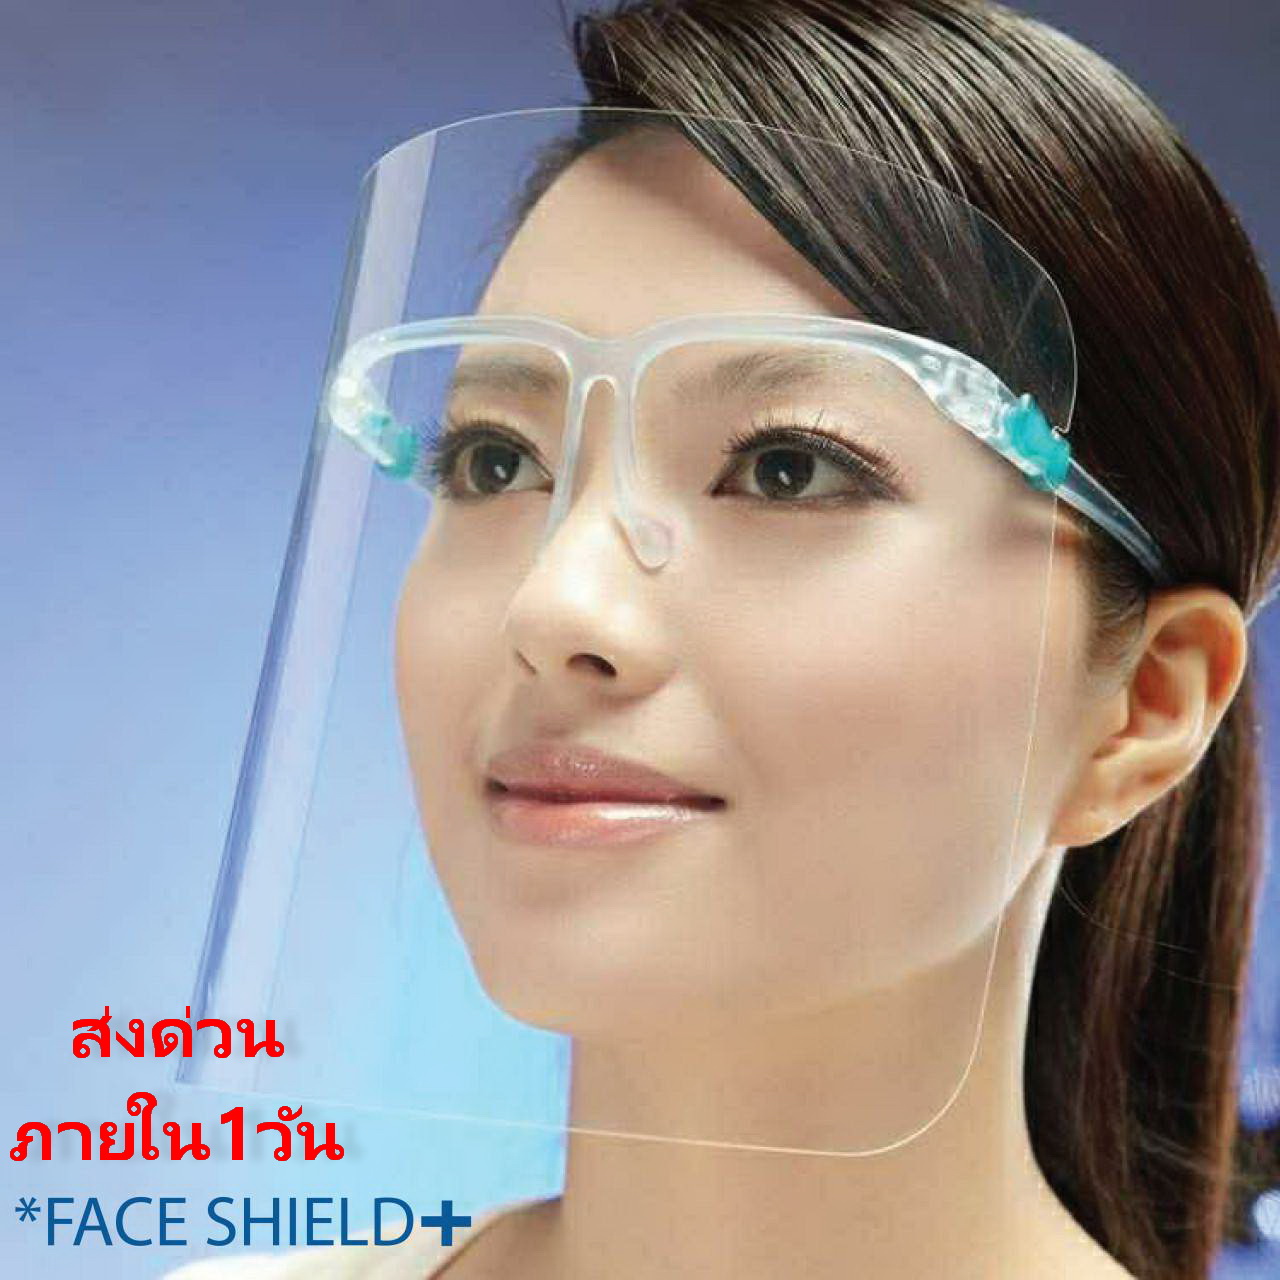 แว่นเฟสชิล เฟซชิลด์ Face shield (ส่งจากไทย) อย่าลืมลอกพลาสติกออกจากแผ่นใสนะคะ พลาสติกเกรดเอ ไม่แข็งไม่คม ประกอบง่าย สวมเหมือนแว่นตา น้ำหนักเบา ไม่เจ็บหน้า